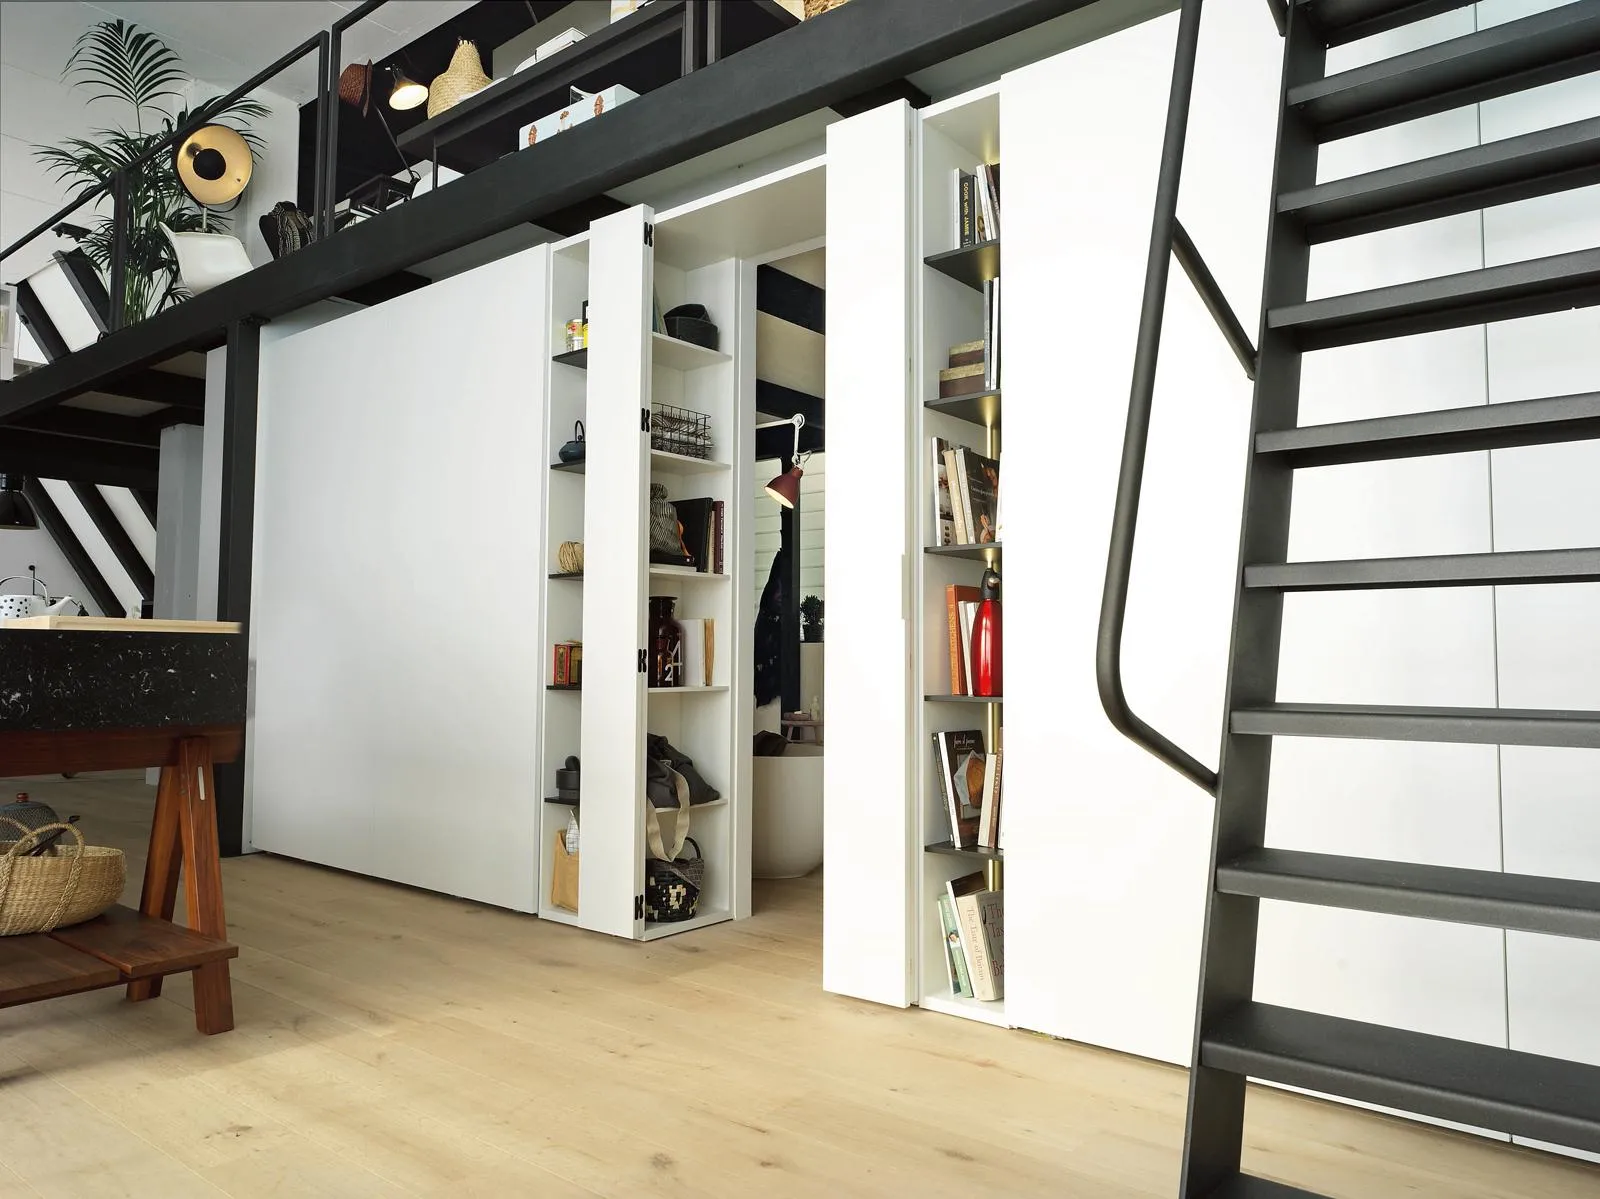 Paravento Ikea per separare gli ambienti interni ed esterni con stile